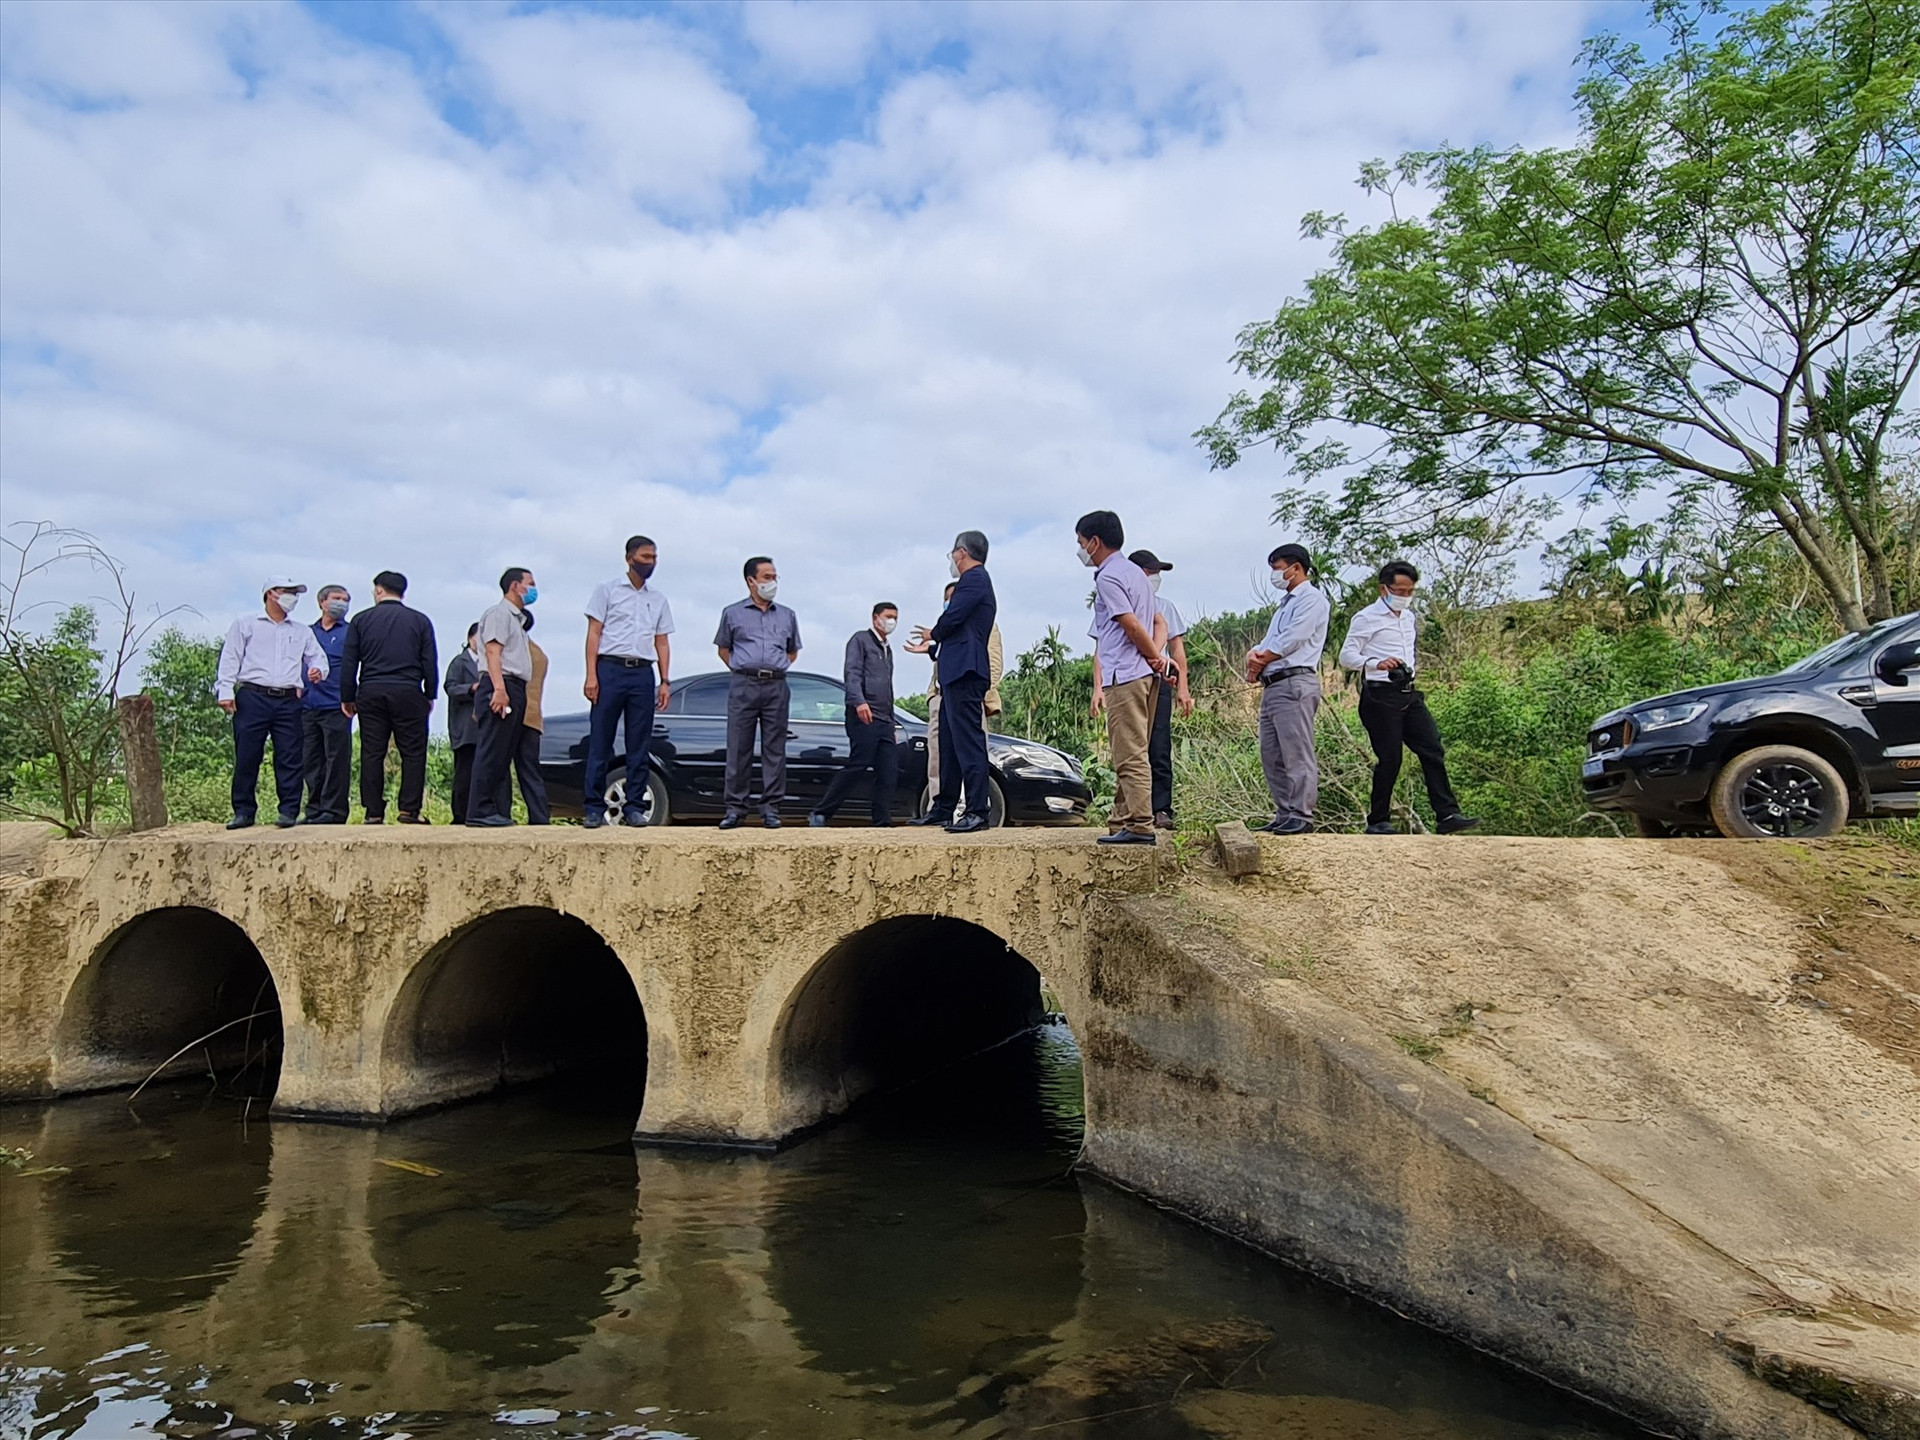 Đoàn công tác của UBND tỉnh khảo sát một cây cầu vượt lũ được kiến nghị đầu tư theo Nghị quyết 88 của huyện Bắc Trà My. Ảnh: D.L